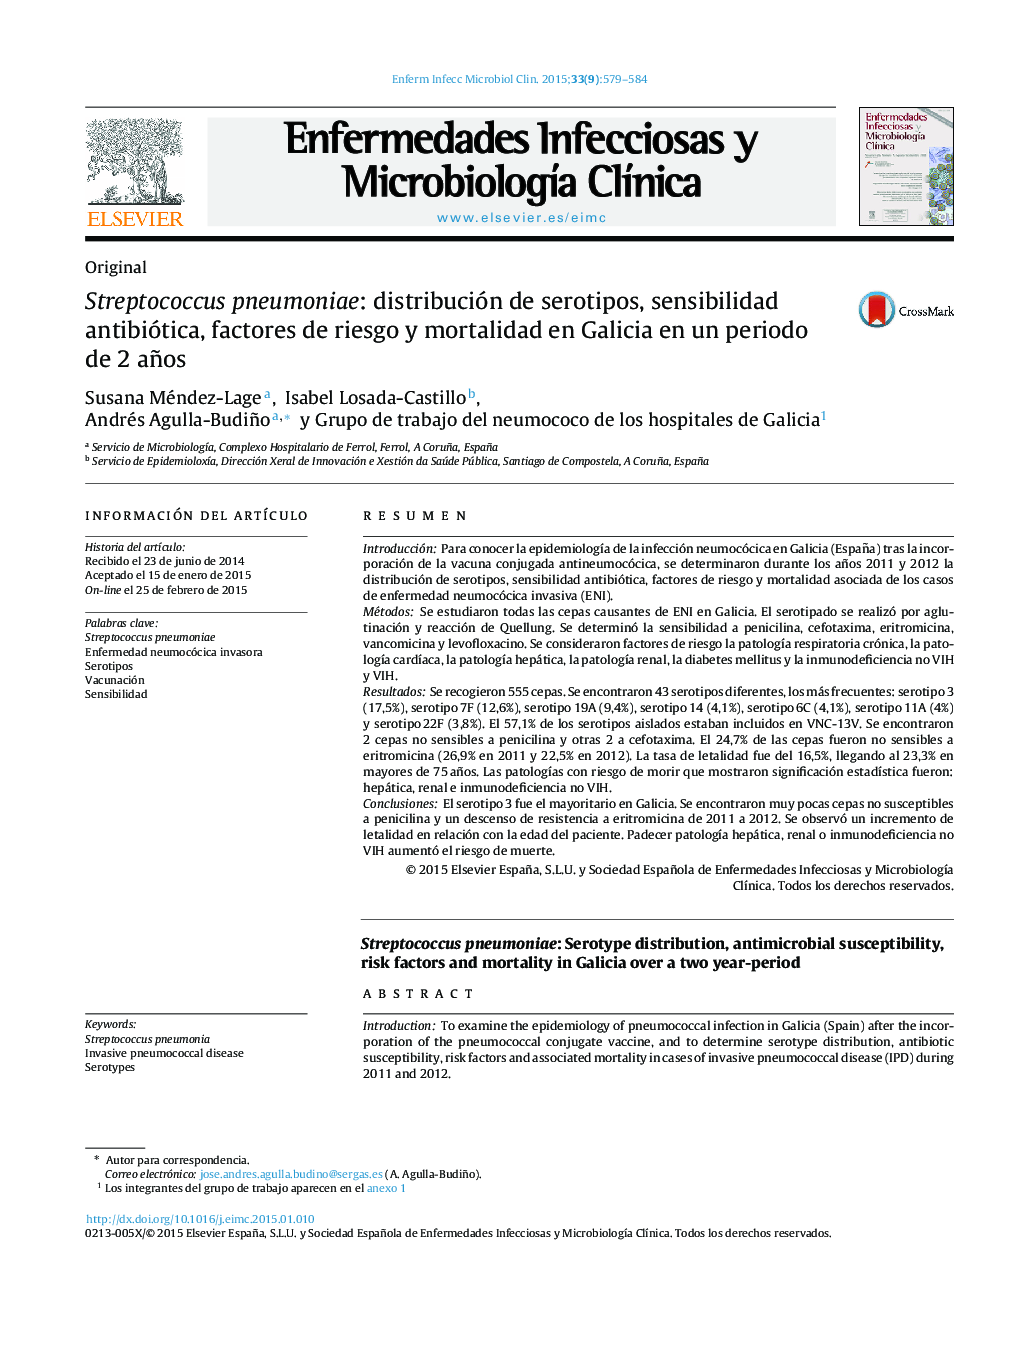 Streptococcus pneumoniae: distribución de serotipos, sensibilidad antibiótica, factores de riesgo y mortalidad en Galicia en un periodo de 2 años